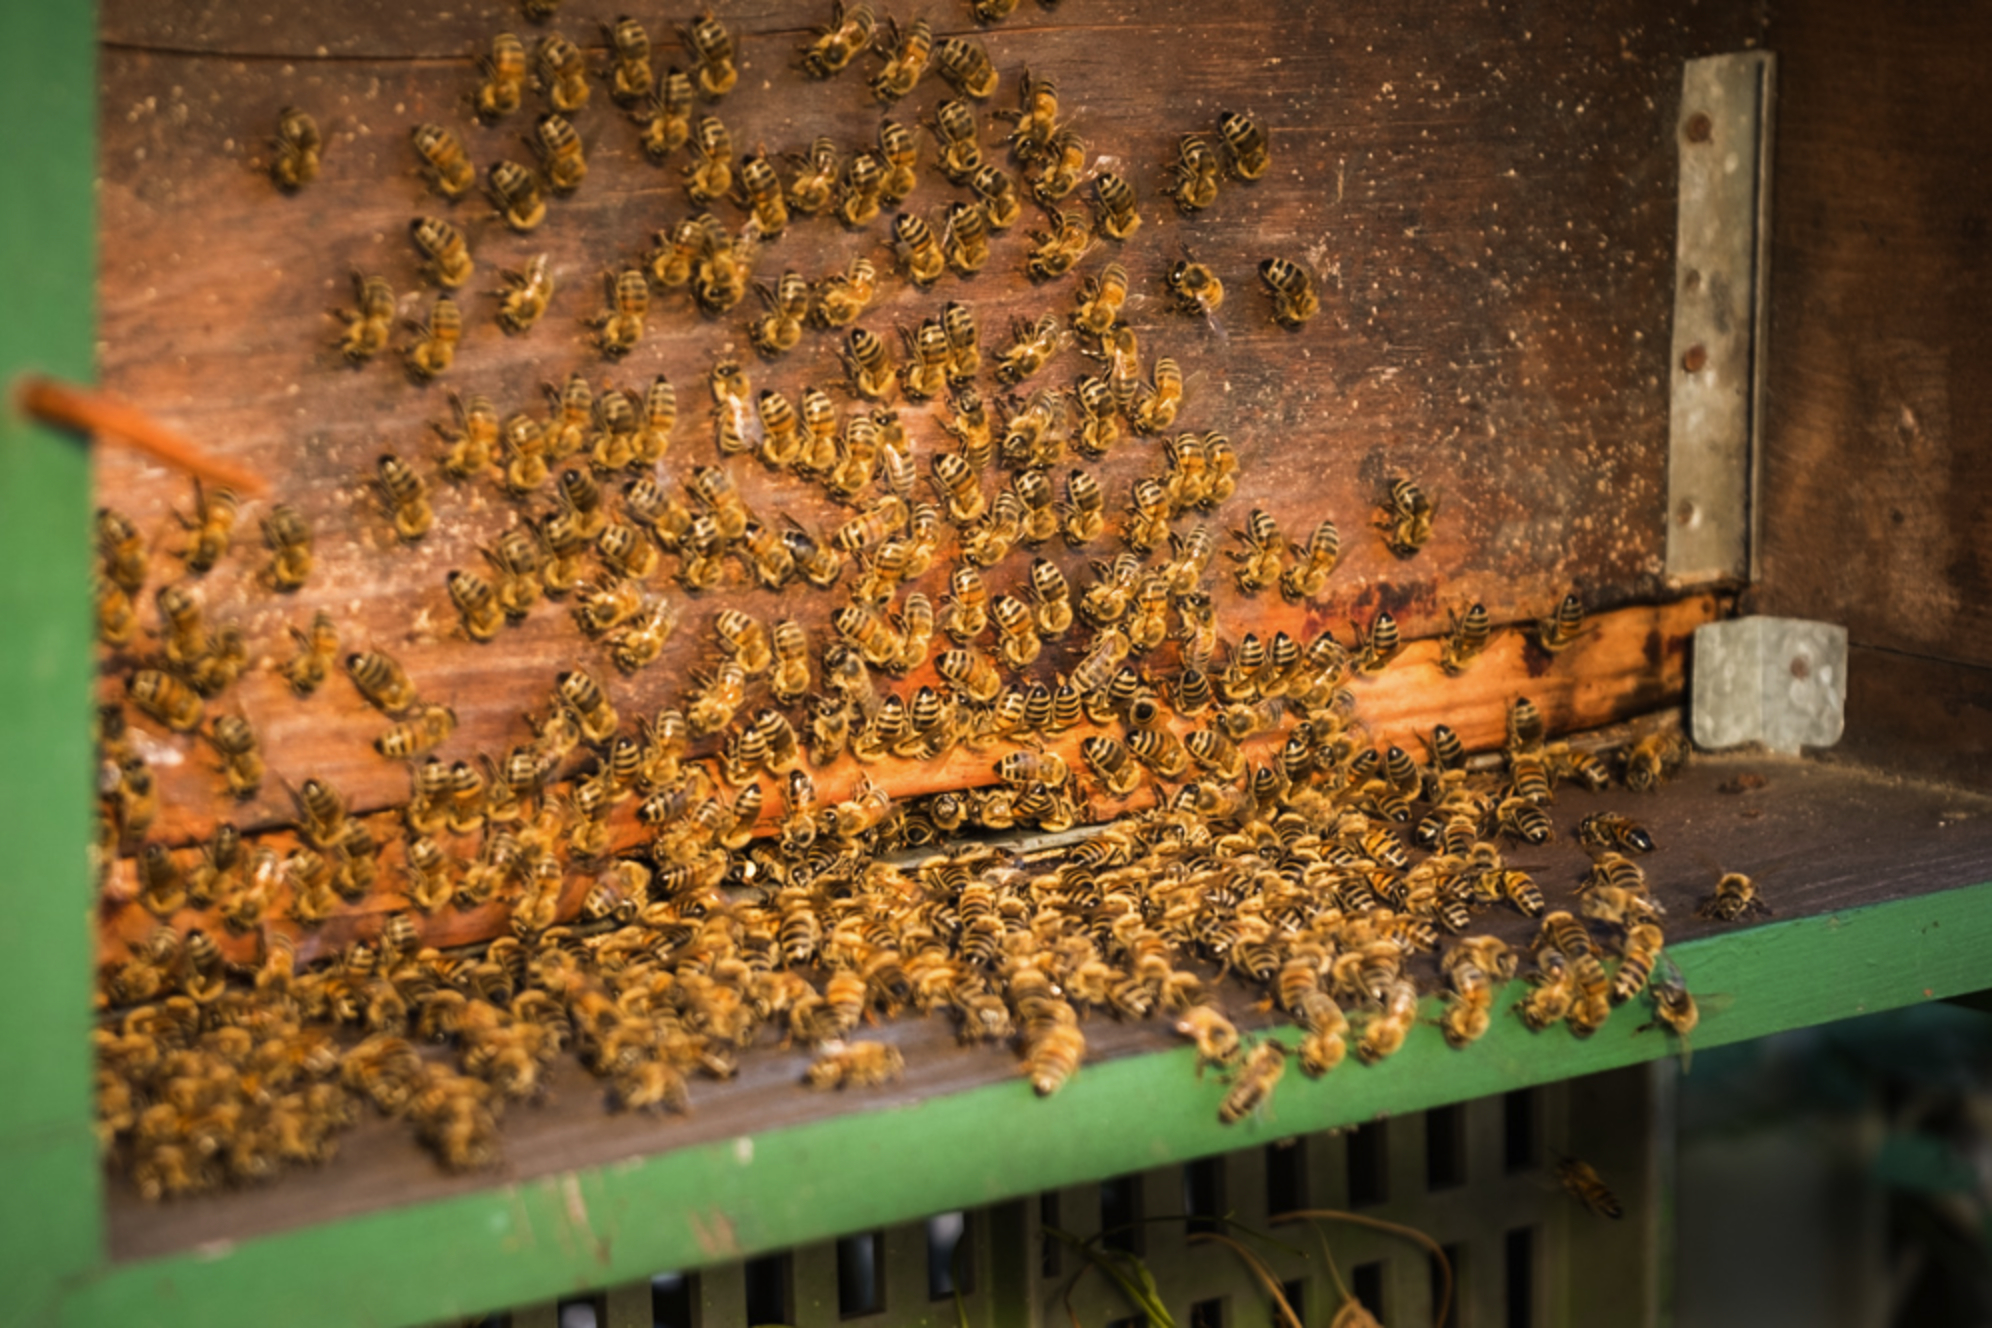 Näitä ahkeria keräilijöitä voi auttaa käyttämällä kasvinsuojeluaineita, jotka eivät vahingoita mehiläisiä.